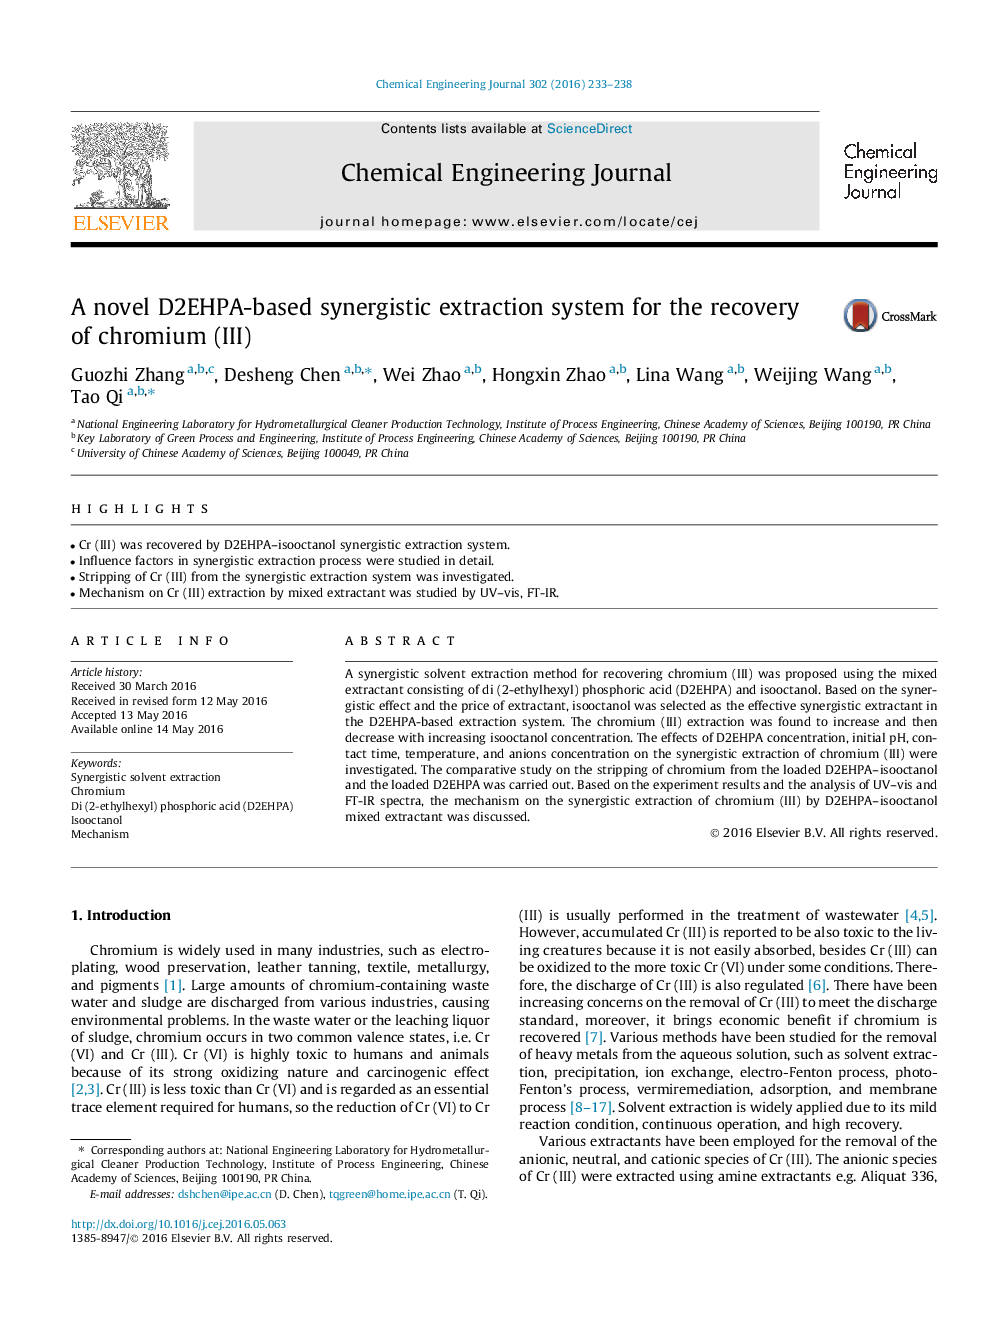 یک سیستم استخراج سینرژیک مبتنی بر D2EHPA برای بازیابی کروم (III)